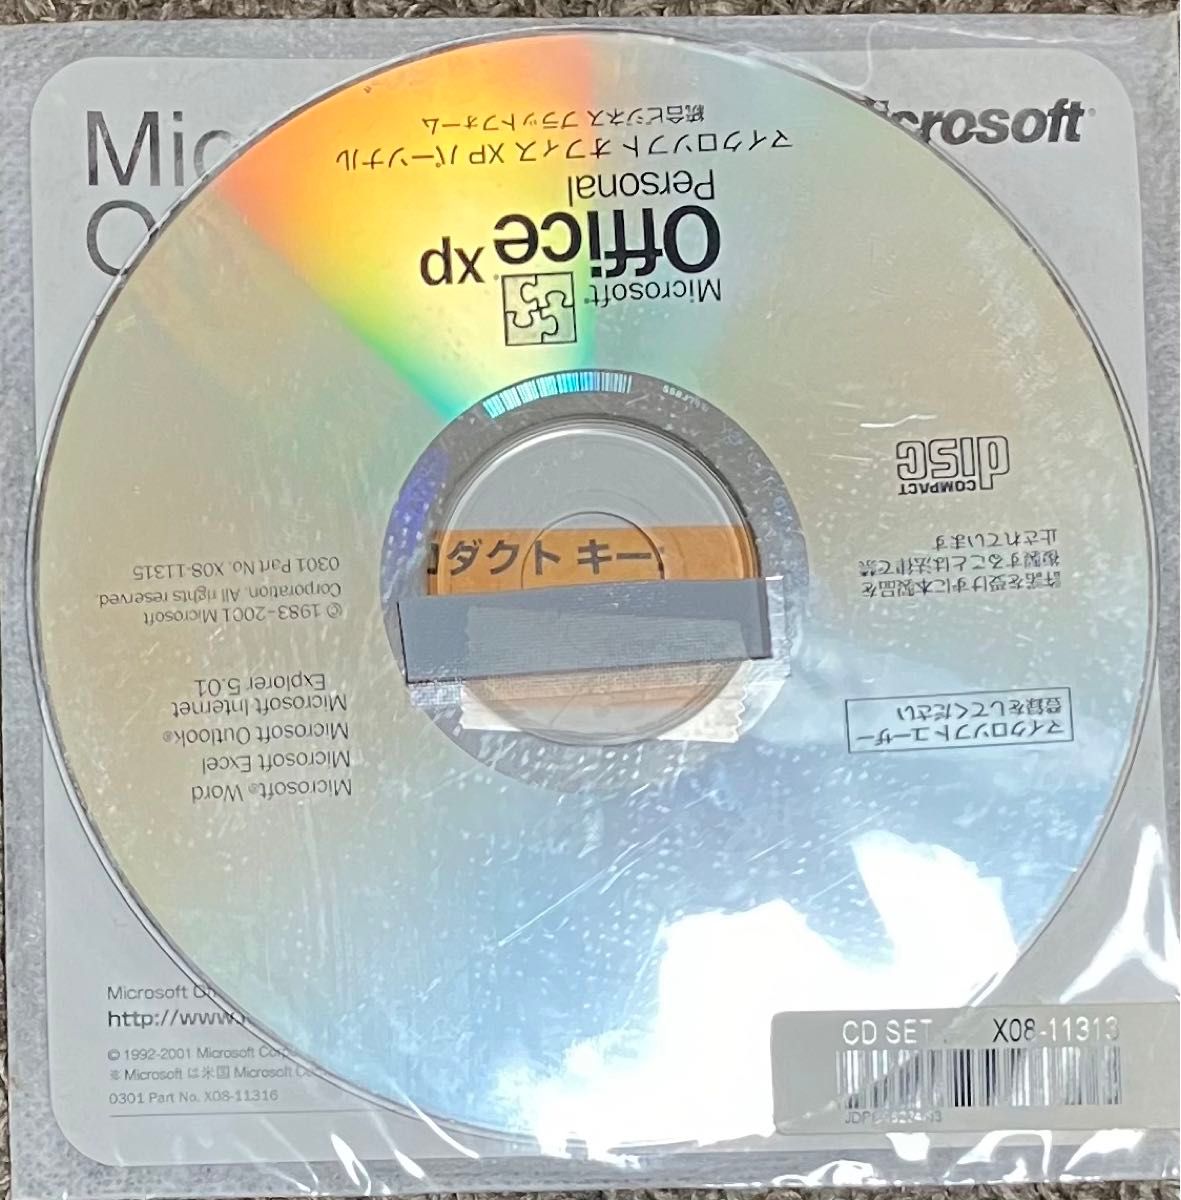 プロダクトキー付きMicrosoft office XP personal CDと2枚セット